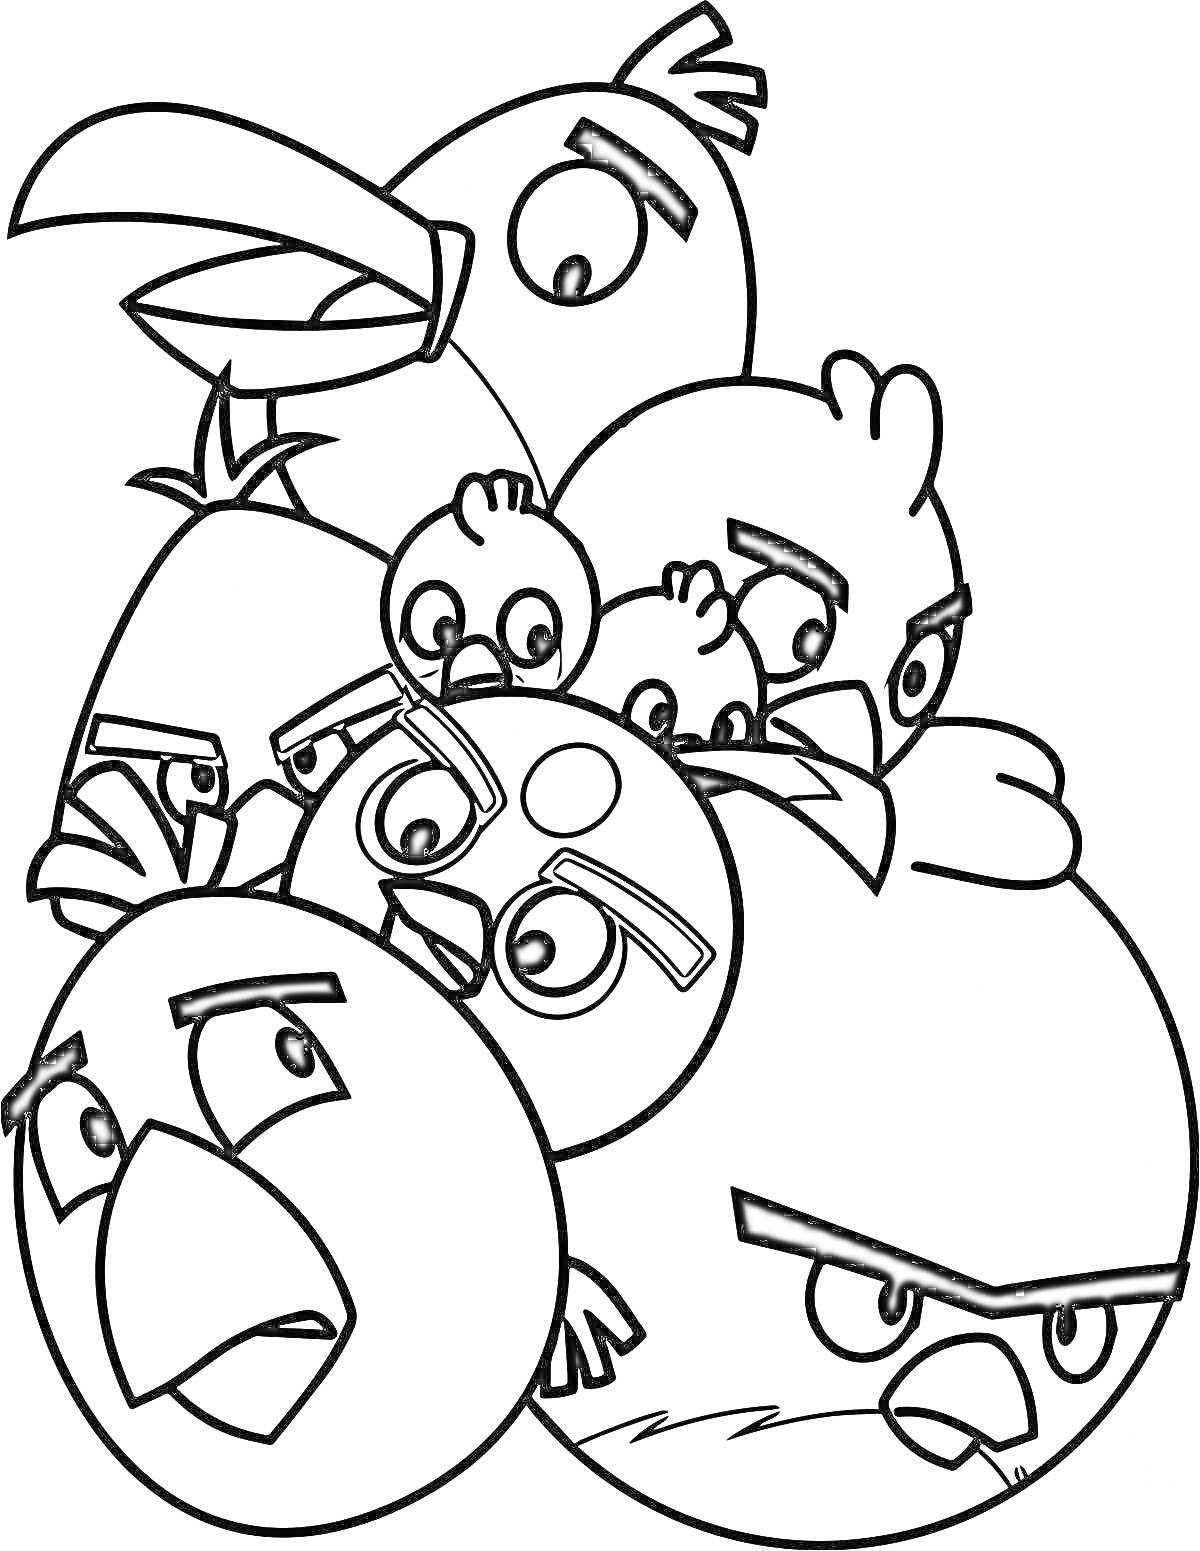 Группа злых птиц с различными выражениями лиц и позами